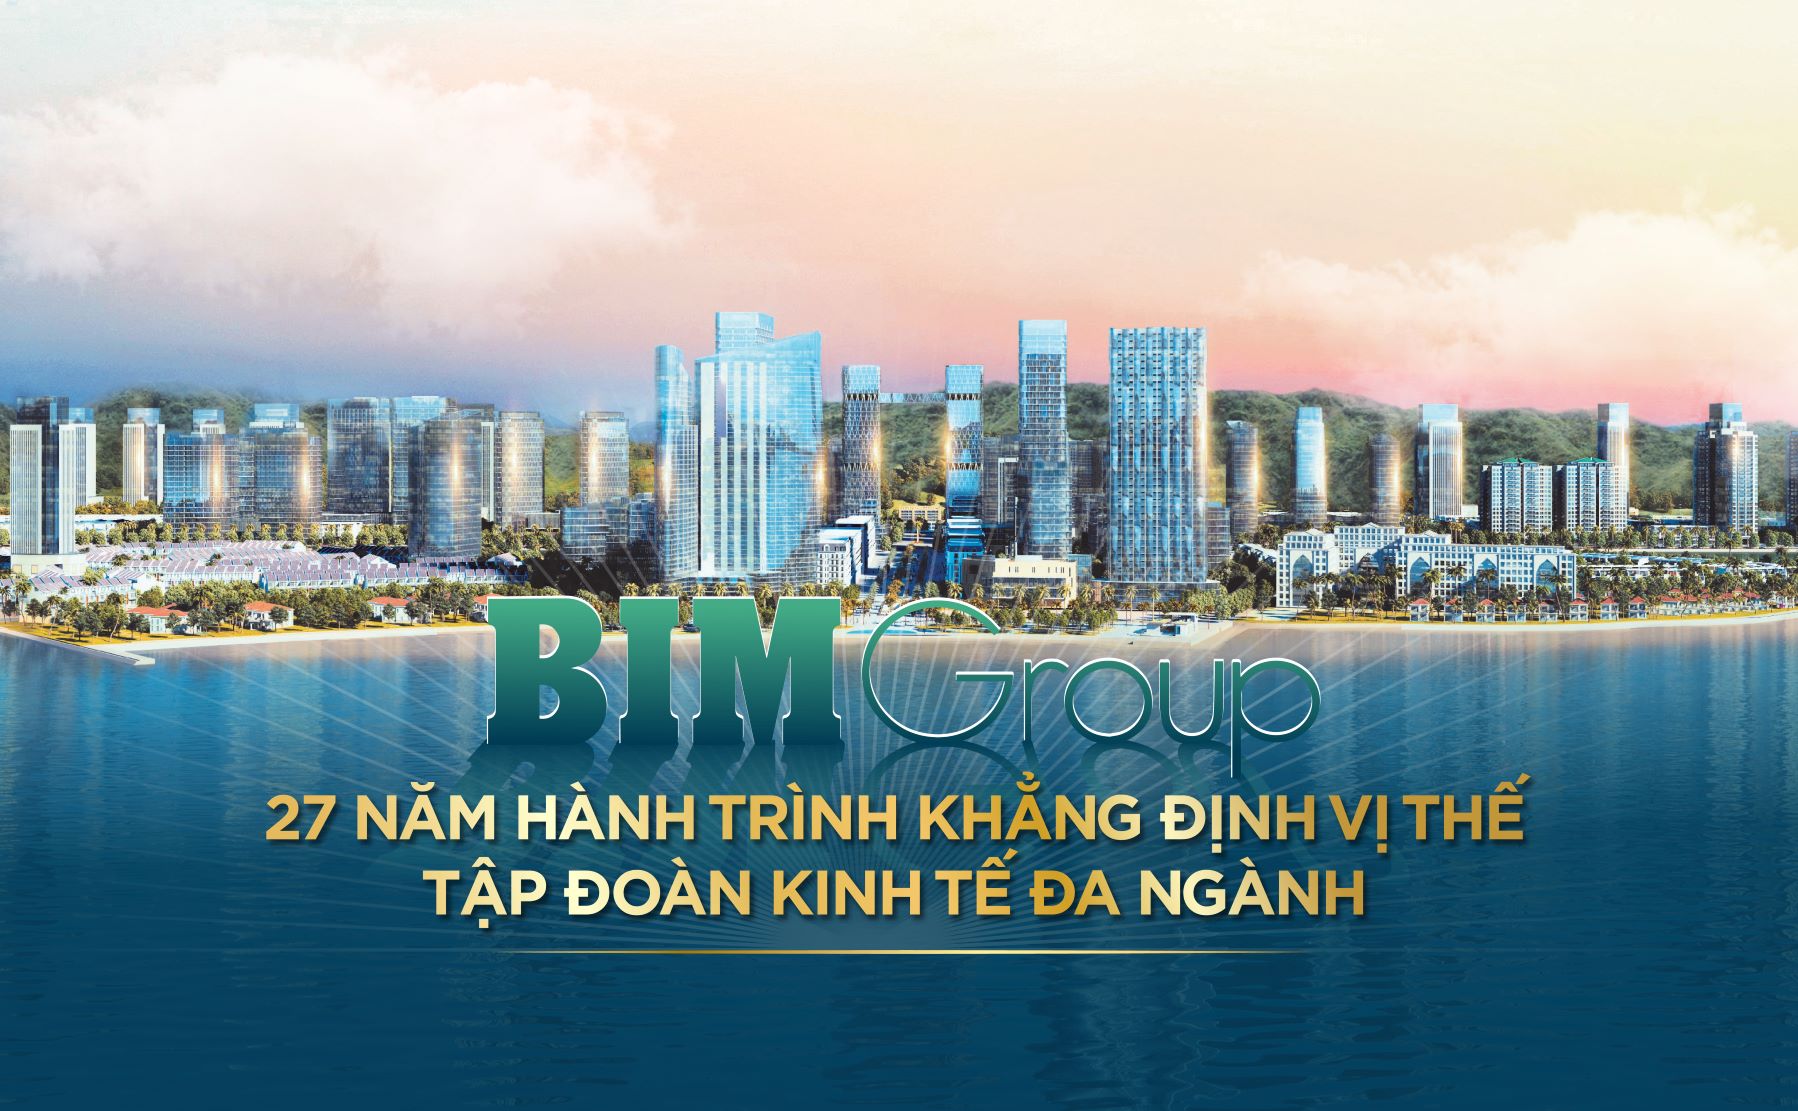 BIM Group - 27 năm hành trình khẳng định vị thế tập đoàn kinh tế đa ngành